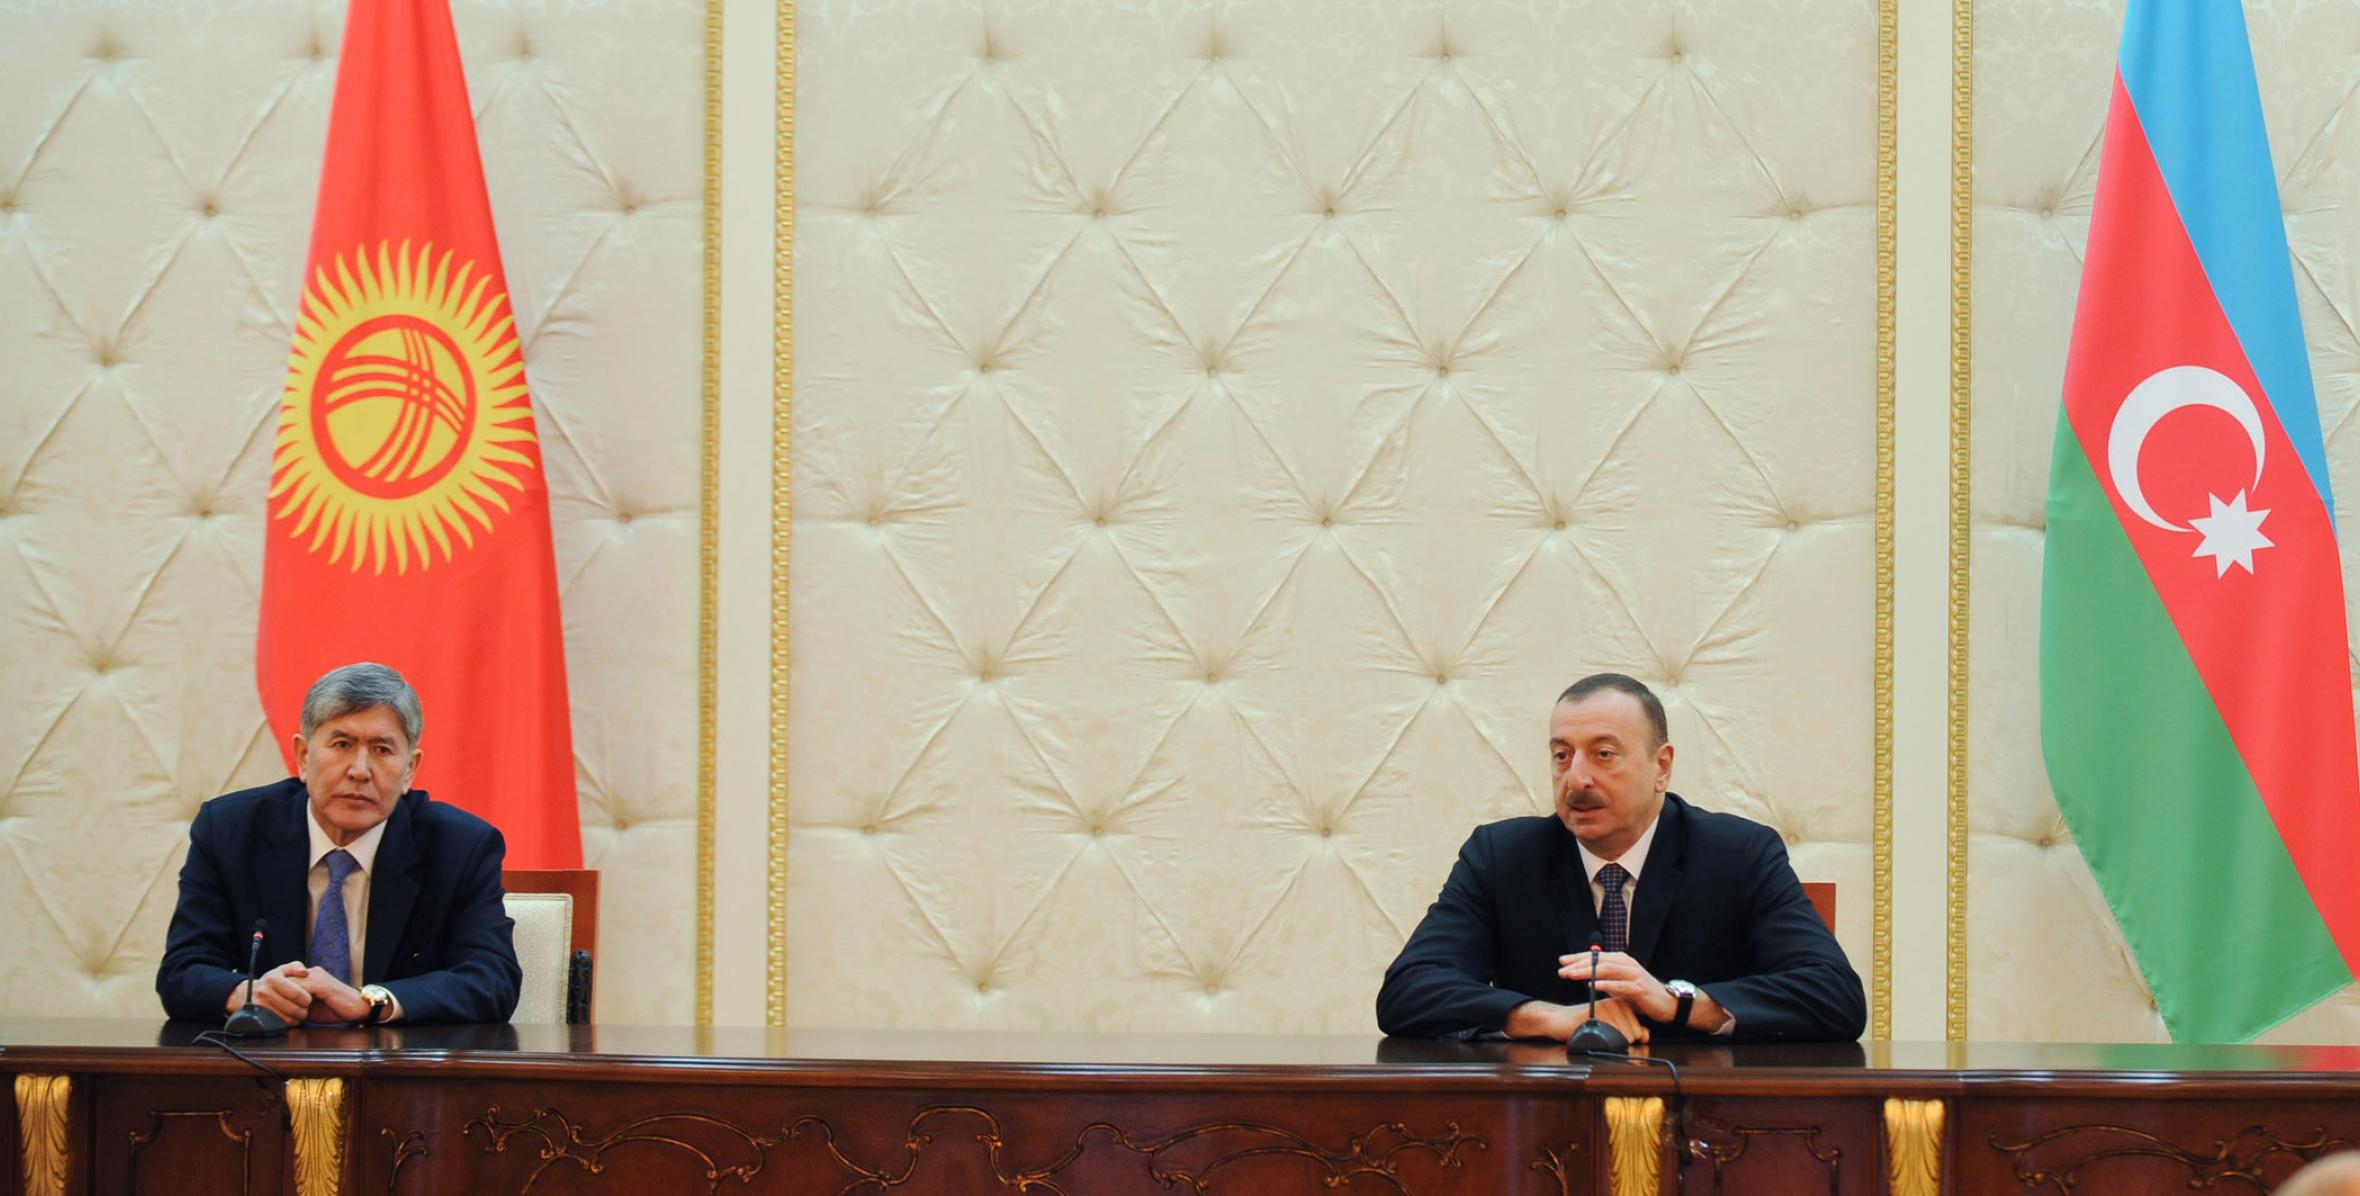 Состоялась пресс-конференция президентов Азербайджана и Кыргызстана